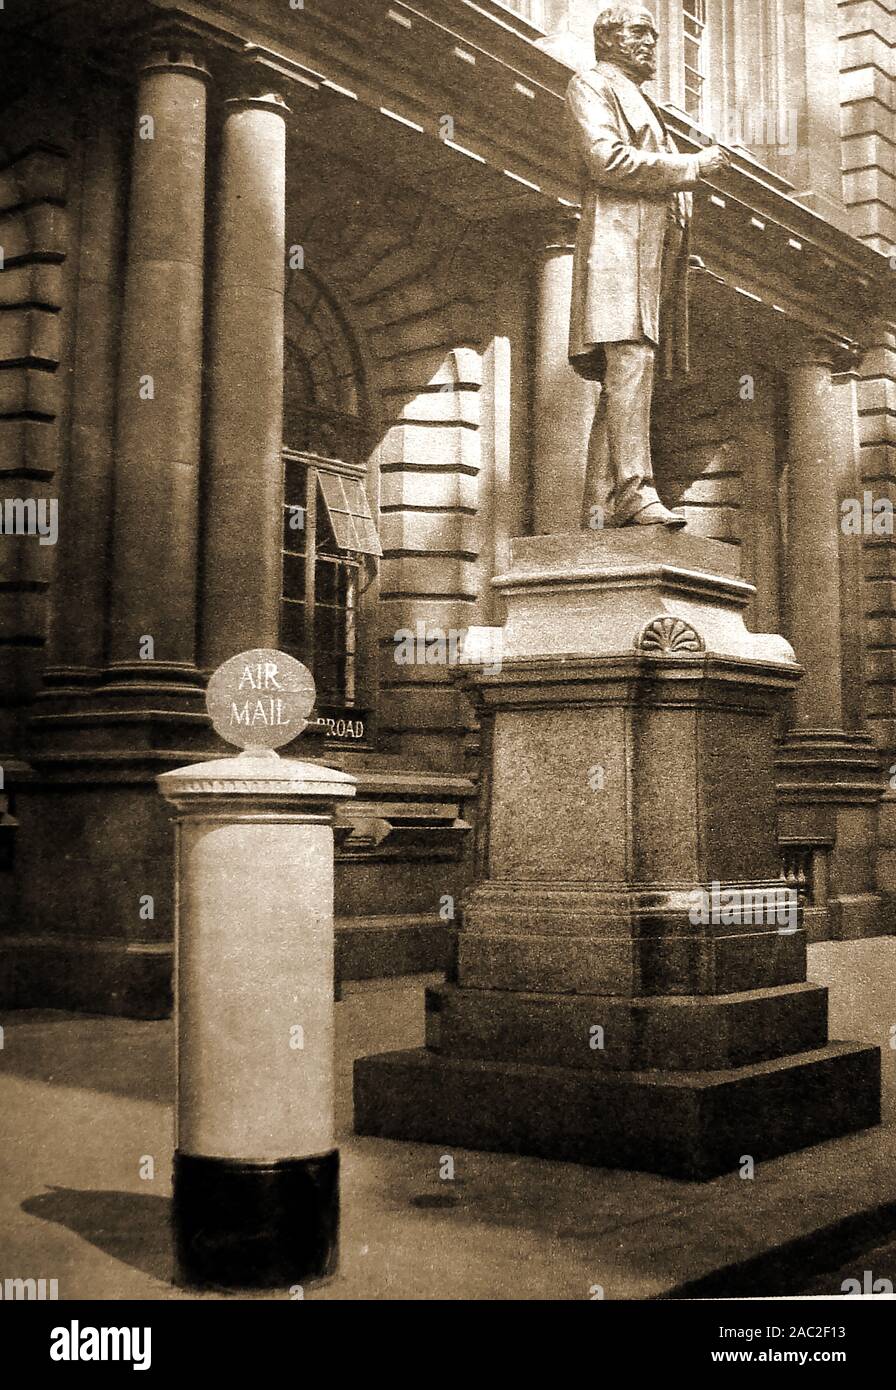 Un 1934 fotografia storica che mostra la statua di Rowland Hill (1795-1879) al di fuori del GPO (Ufficio Generale delle Poste) Londra, UK con un blu dedicato airmail postbox accanto ad esso Foto Stock